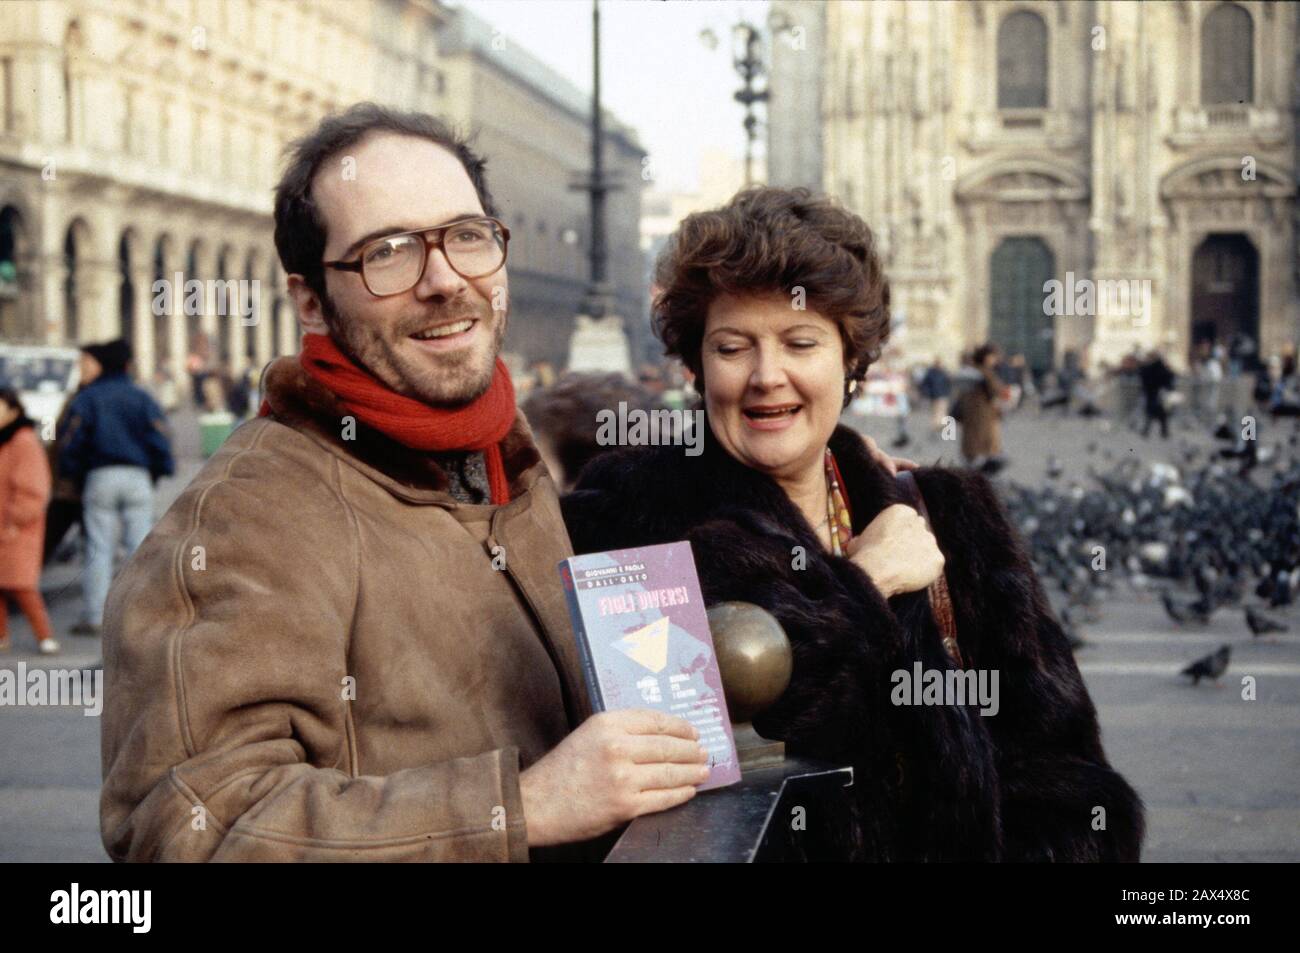 1991 , Milano , ITALY : The italian writer and gay political  movement leader GIOVANNI DALL'ORTO ( born in Milano , 1958 ) with his mother PAOLA DALL'ORTO , president of AGEDO ( Associazione Genitori di omosessuali )  co-writer for  the book FIGLI DIVERSI ( Ed. Sonda , Torino , 1991 ) - SCRITTORE - GIORNALISTA - JOURNALIST - LETTERATURA - letterato - literature - GAY - LGBT - OMOSESSUALE - HOMOSEXUAL - Omosessualità  - Homosexuality - PRIDE - A.G.E.D.O. - DALLORTO - Piazza Duomo   -- Photo by  Giovanbattista BRAMBILLA --- ARCHIVIO GBB Stock Photo